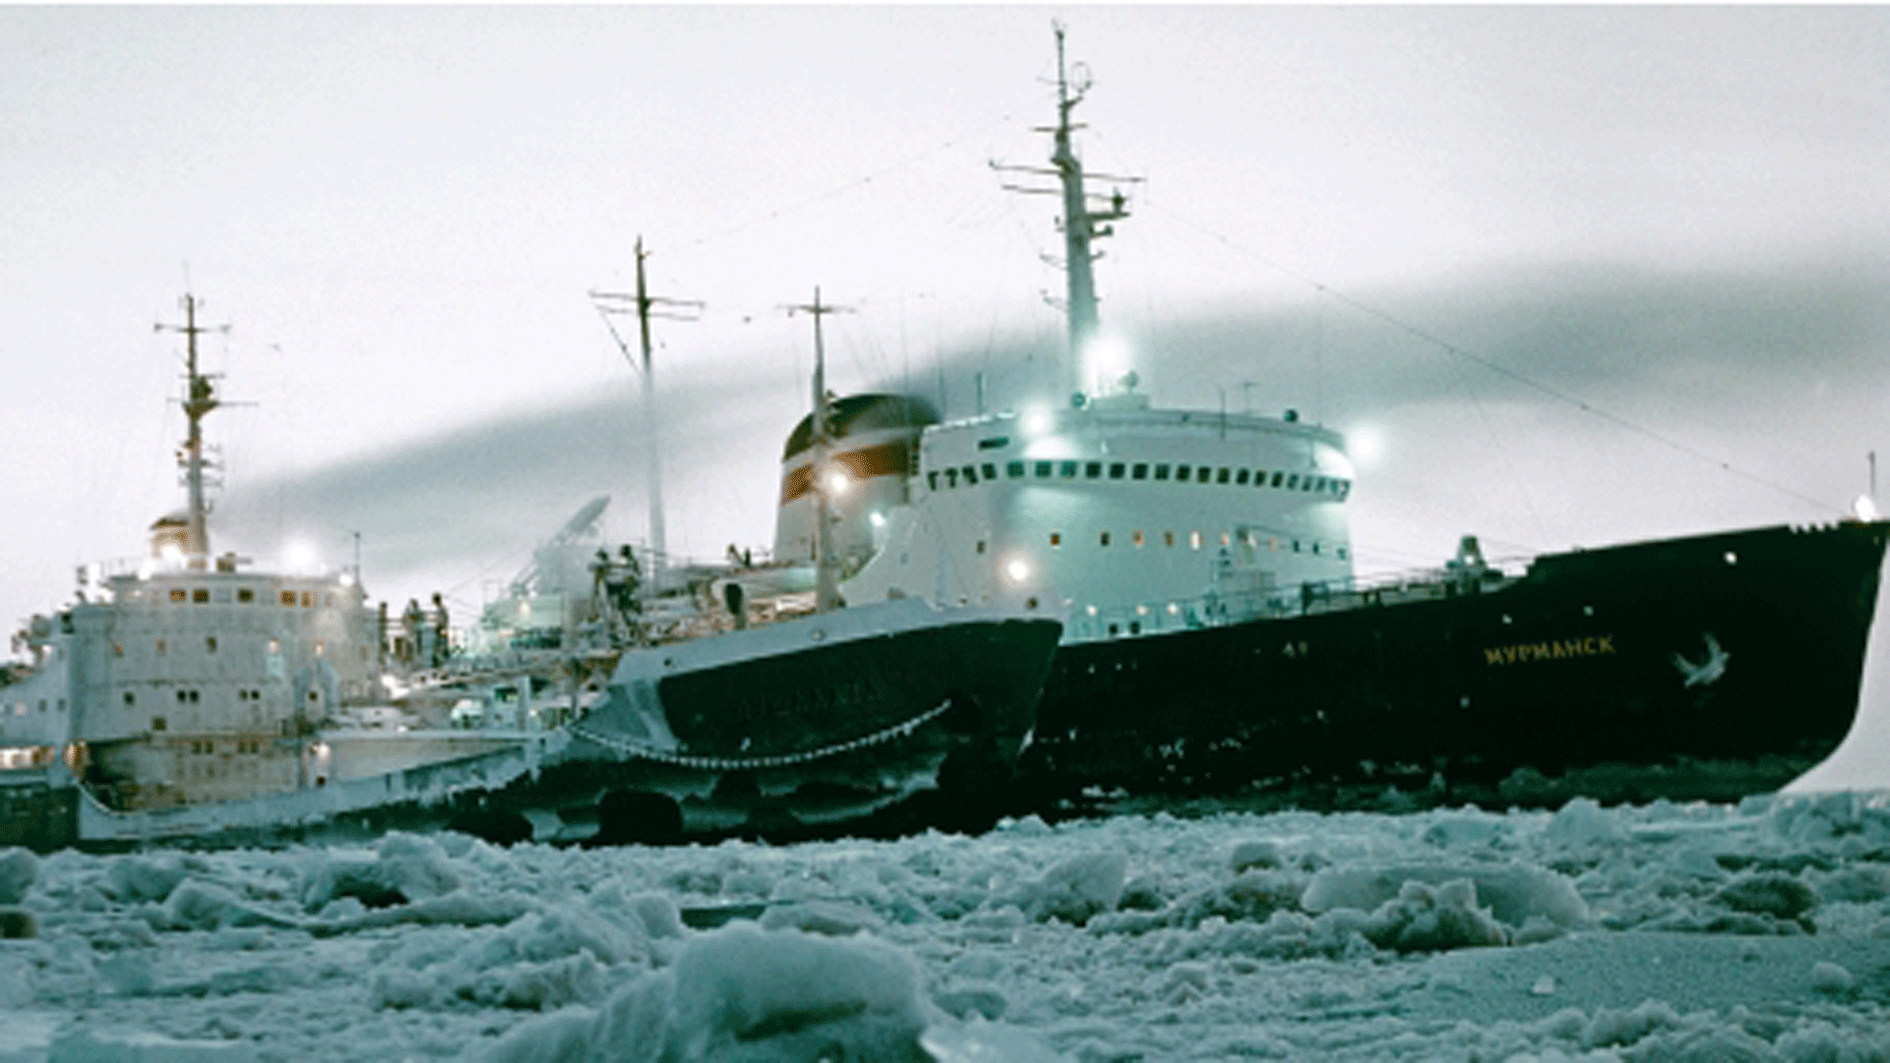 Tàu phá băng của Nga Murmansk dẫn đường cho một con tàu ở Bắc Cực - Ảnh: Ria Novosti